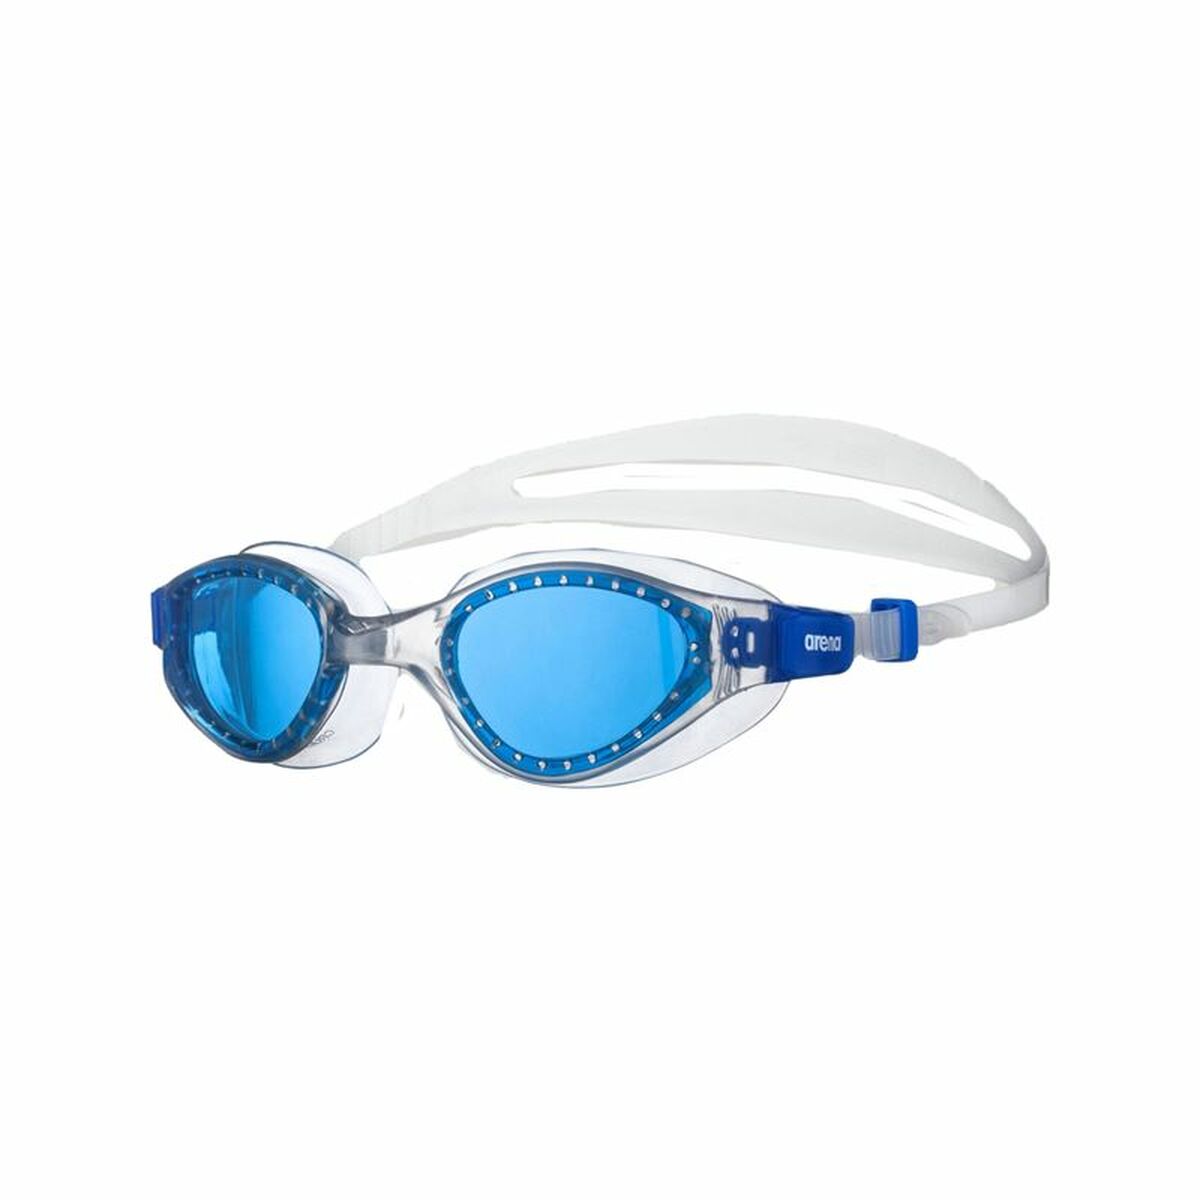 Gafas De Natación Arena Cruiser Evo - Azul - Gafas De Natación para Niños